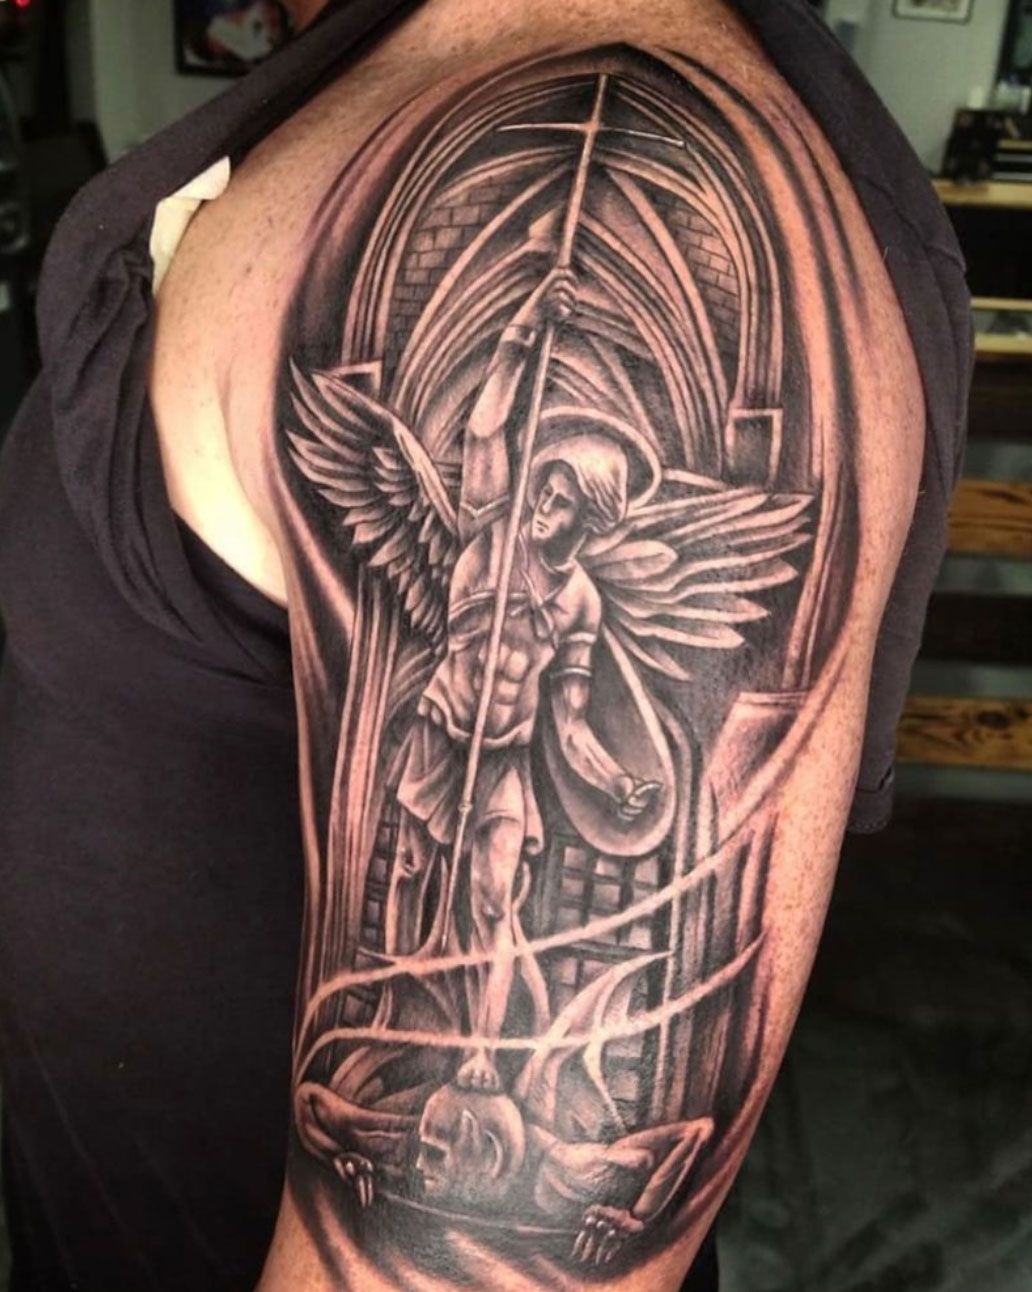 Felipe Rapucci, New Zealand | Saint barbara, Tattoos, Mission tattoo